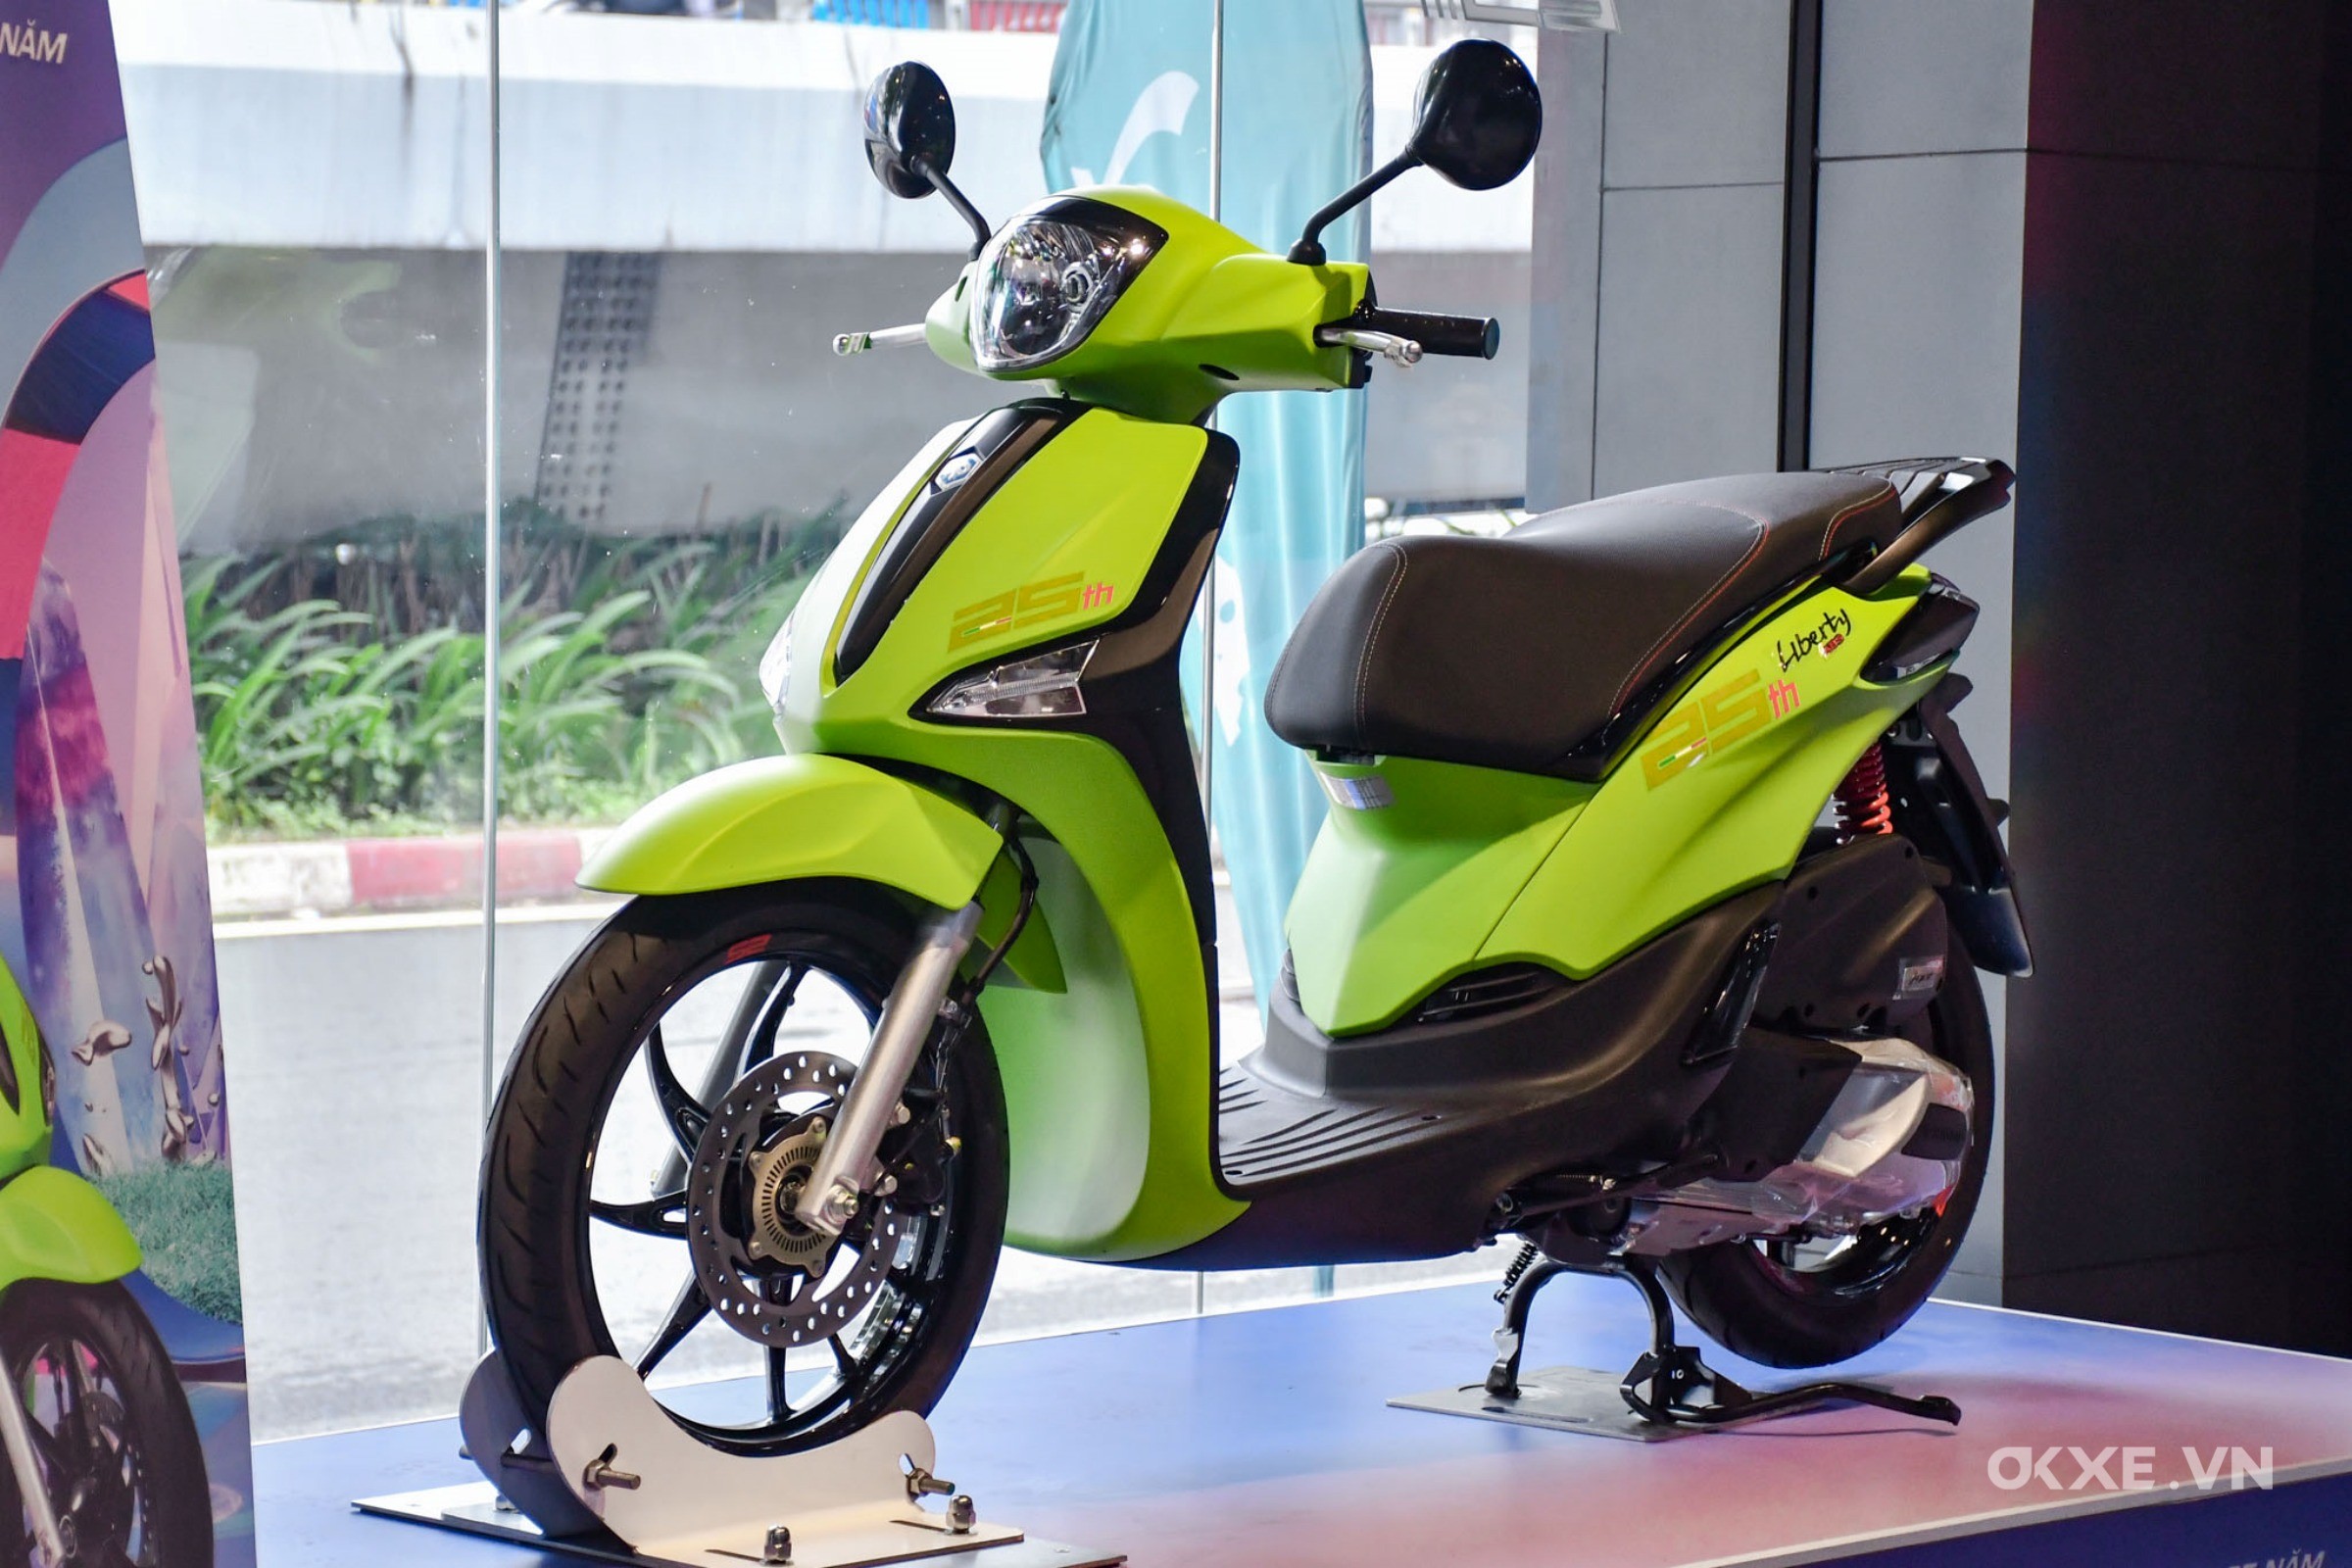 VCCI đề xuất bỏ bảo hiểm bắt buộc với xe máy  Nhịp sống kinh tế Việt Nam   Thế giới